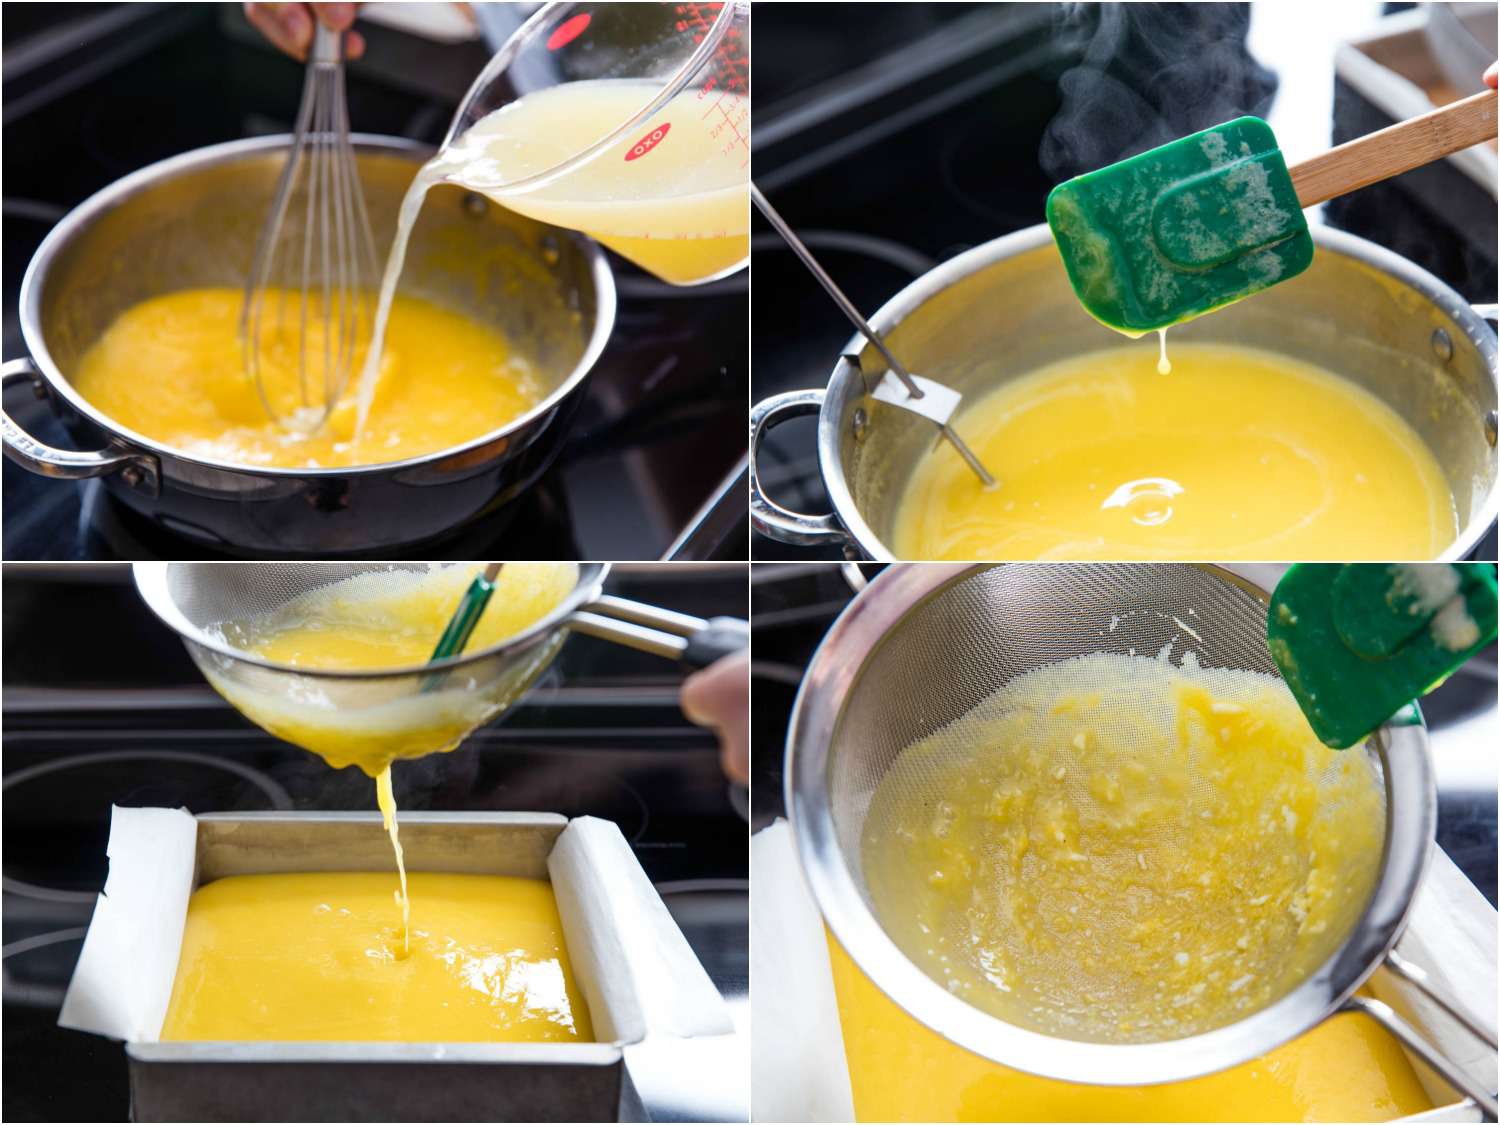 拼贴照片显示，将柠檬汁搅拌到蛋糖混合物中，在炉子上烹饪混合物，然后滤入羊皮纸衬里的烤盘，制作柠檬棒。